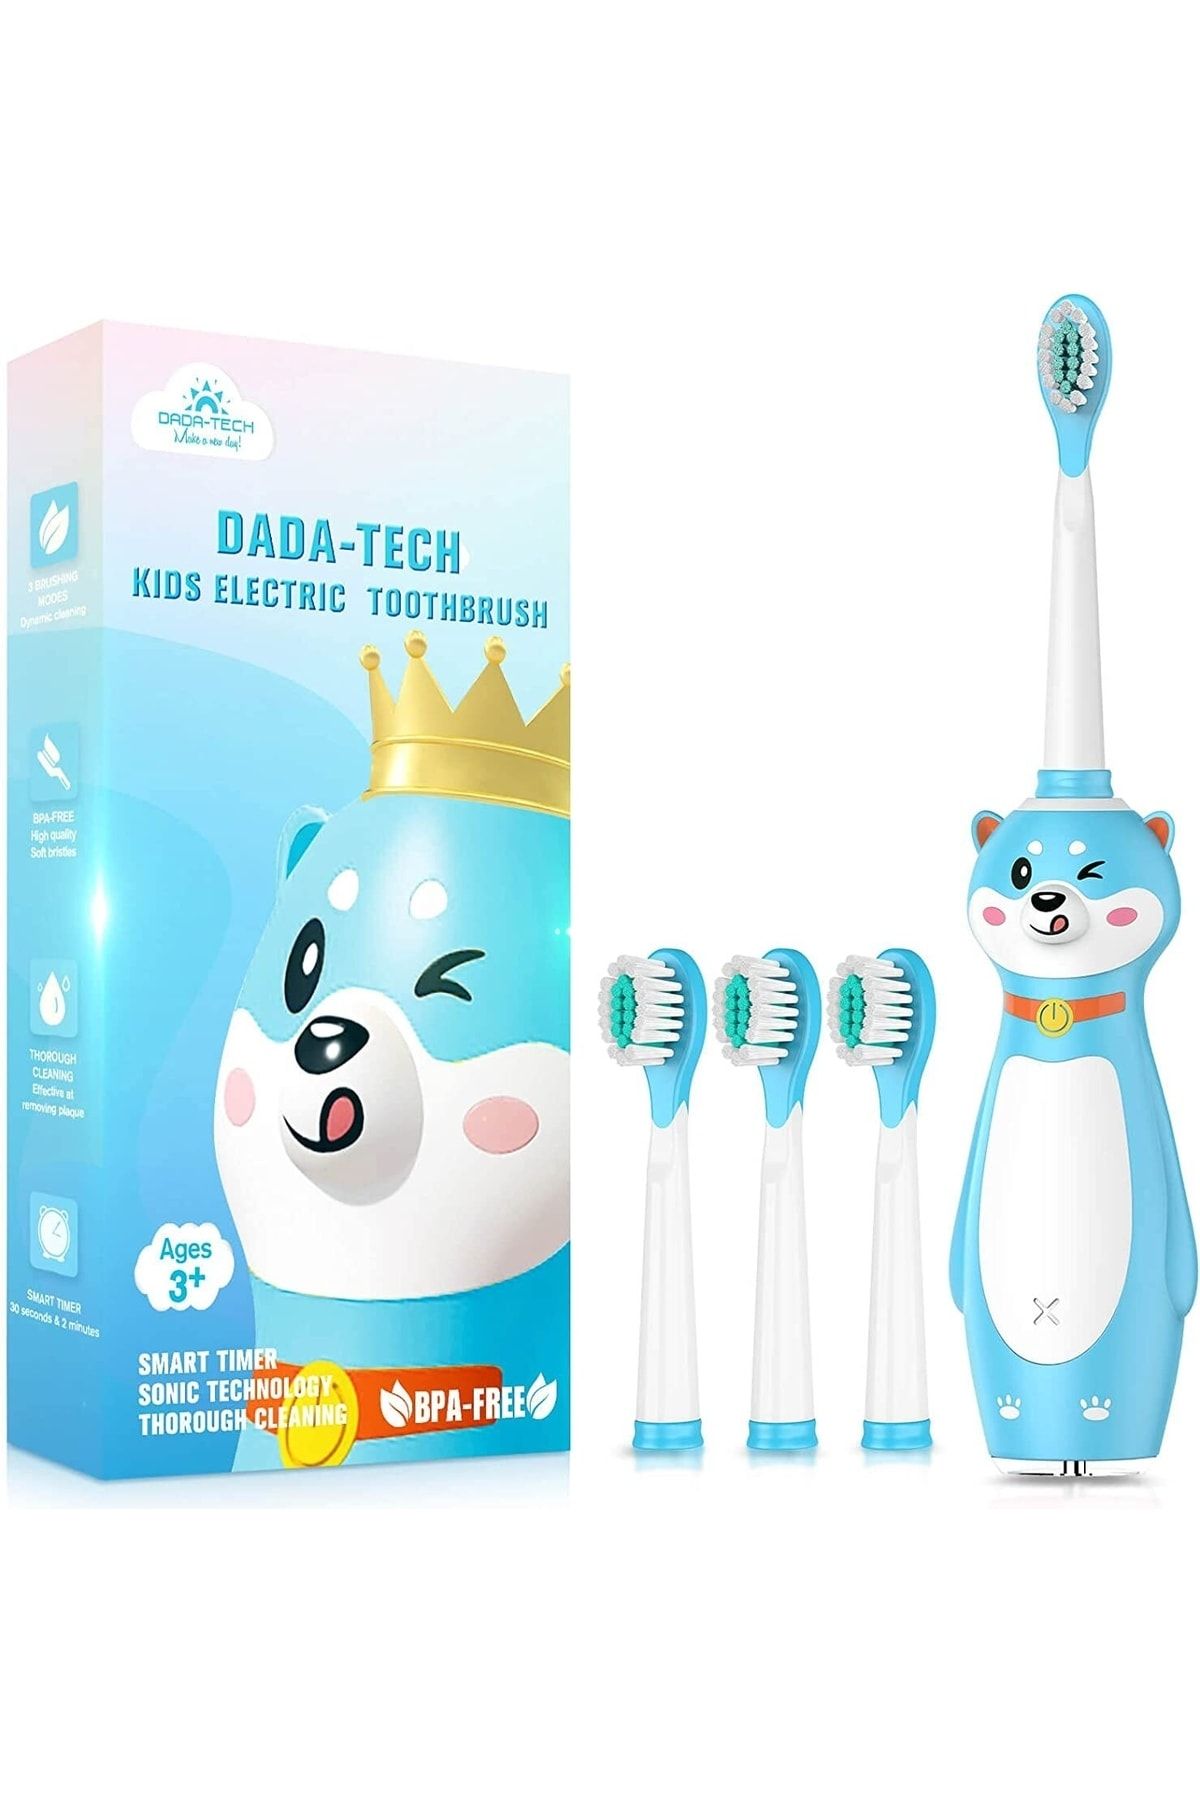 DADA-TECH Elektrikli Diş Fırçası, Çocuk Diş Fırçası 3 Yaşından Itibaren Erkek Ve Kız Çocukları Için